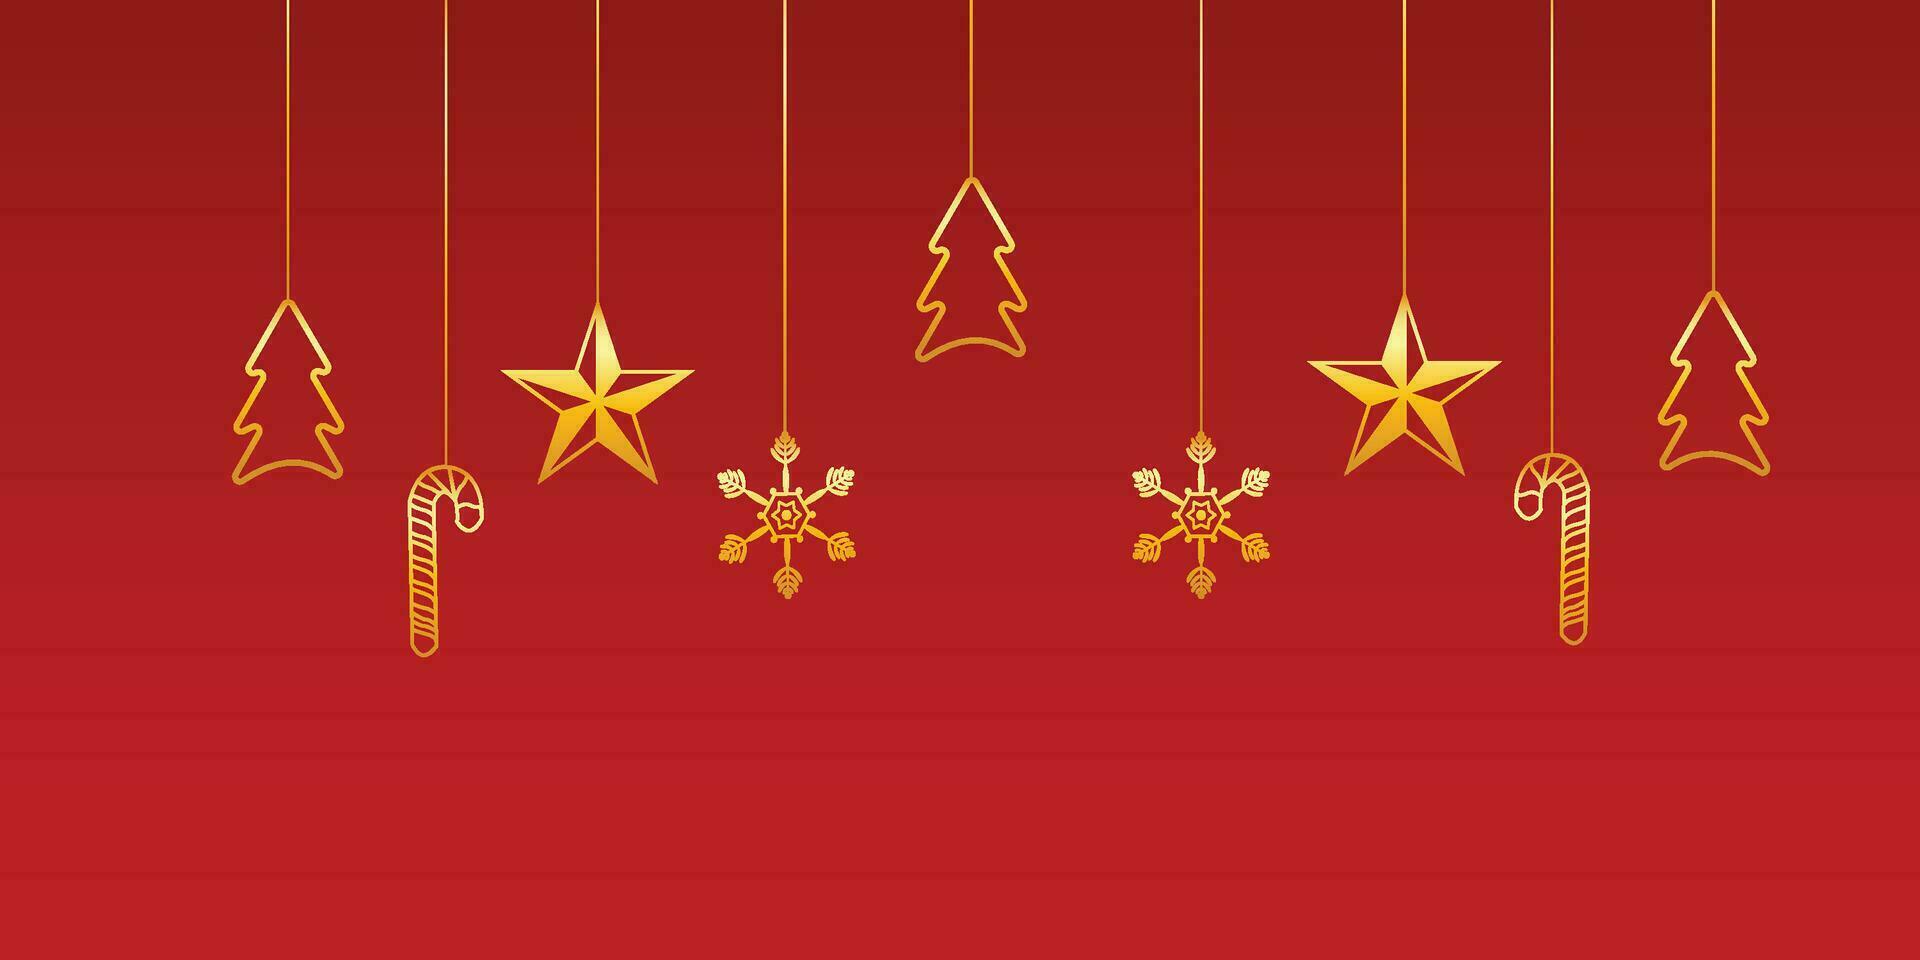 allegro Natale bandiera con d'oro stelle e scatole e caramella vettore